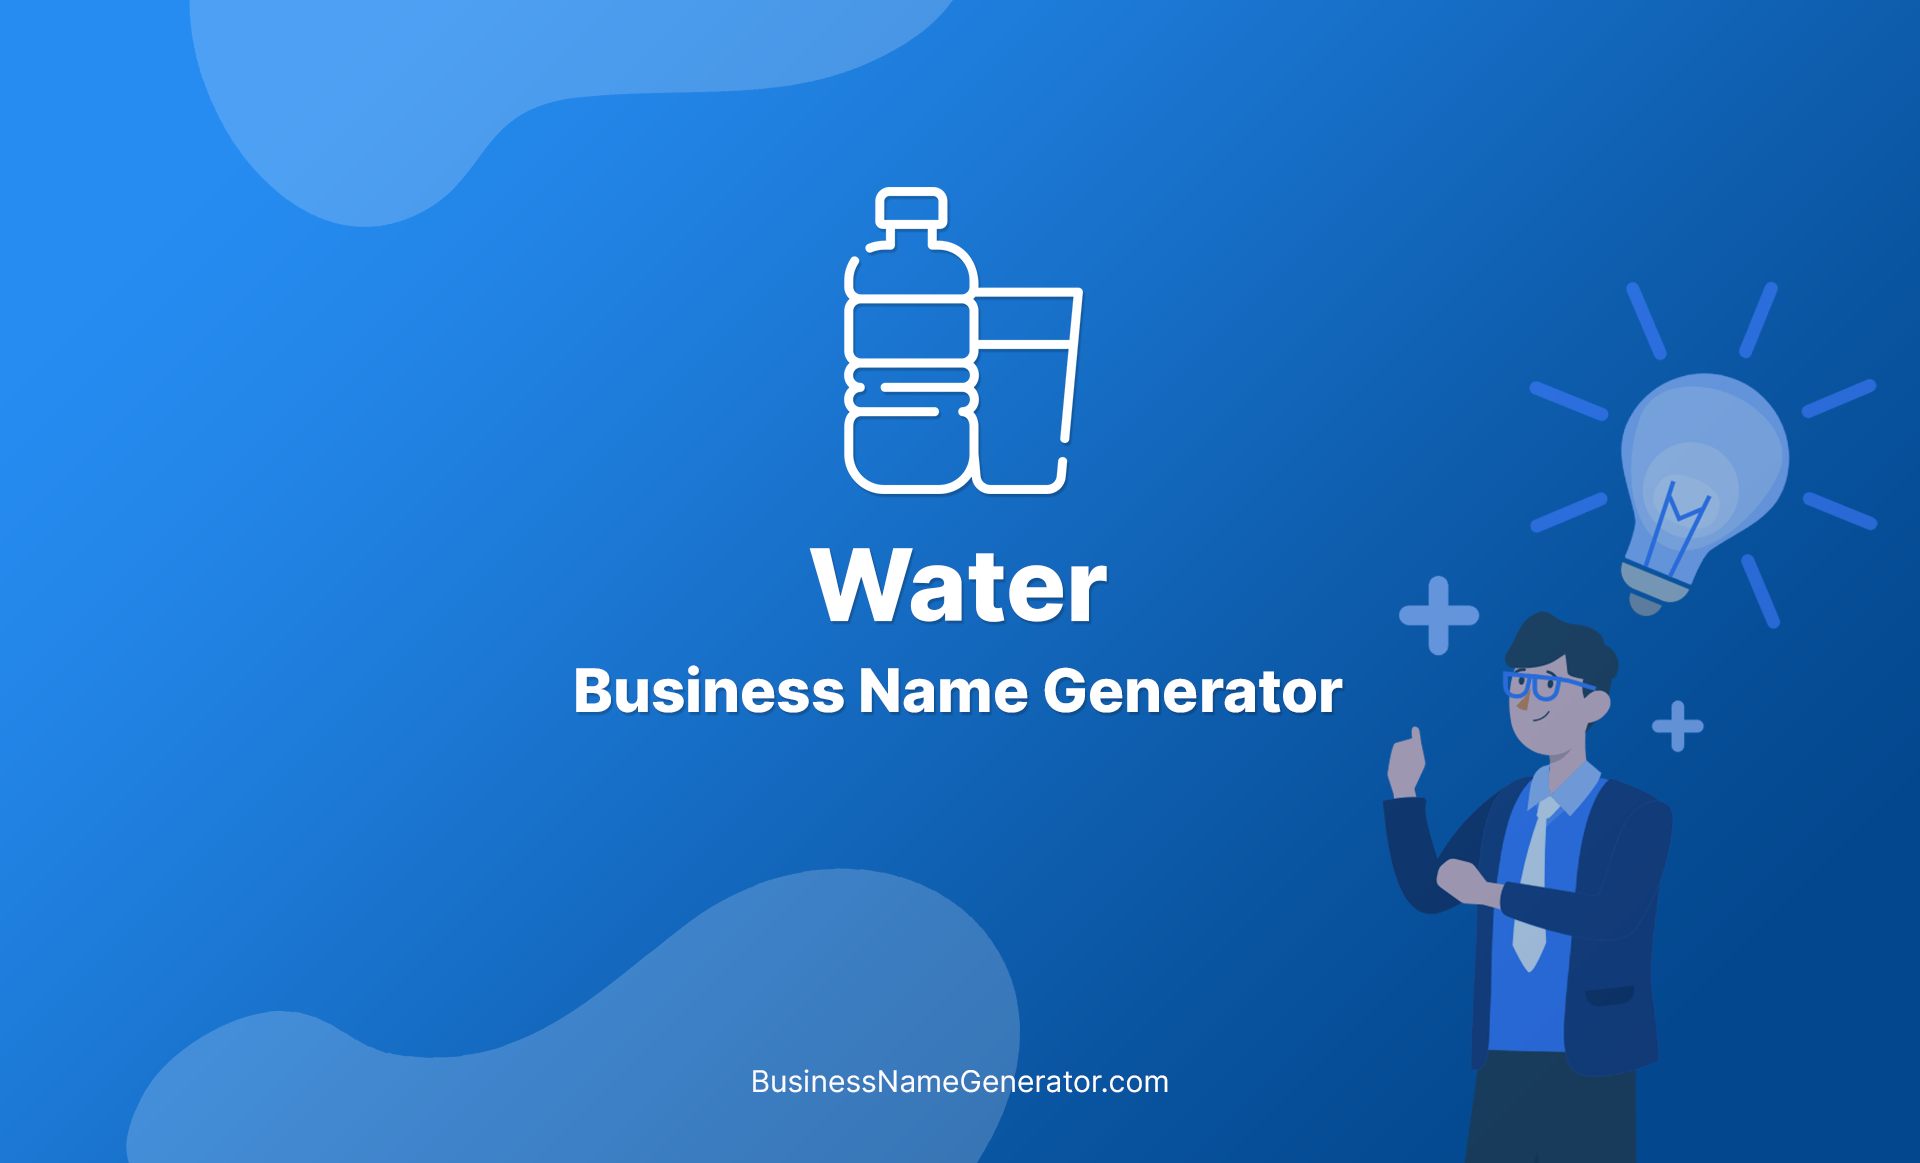 Water Business Name Generator